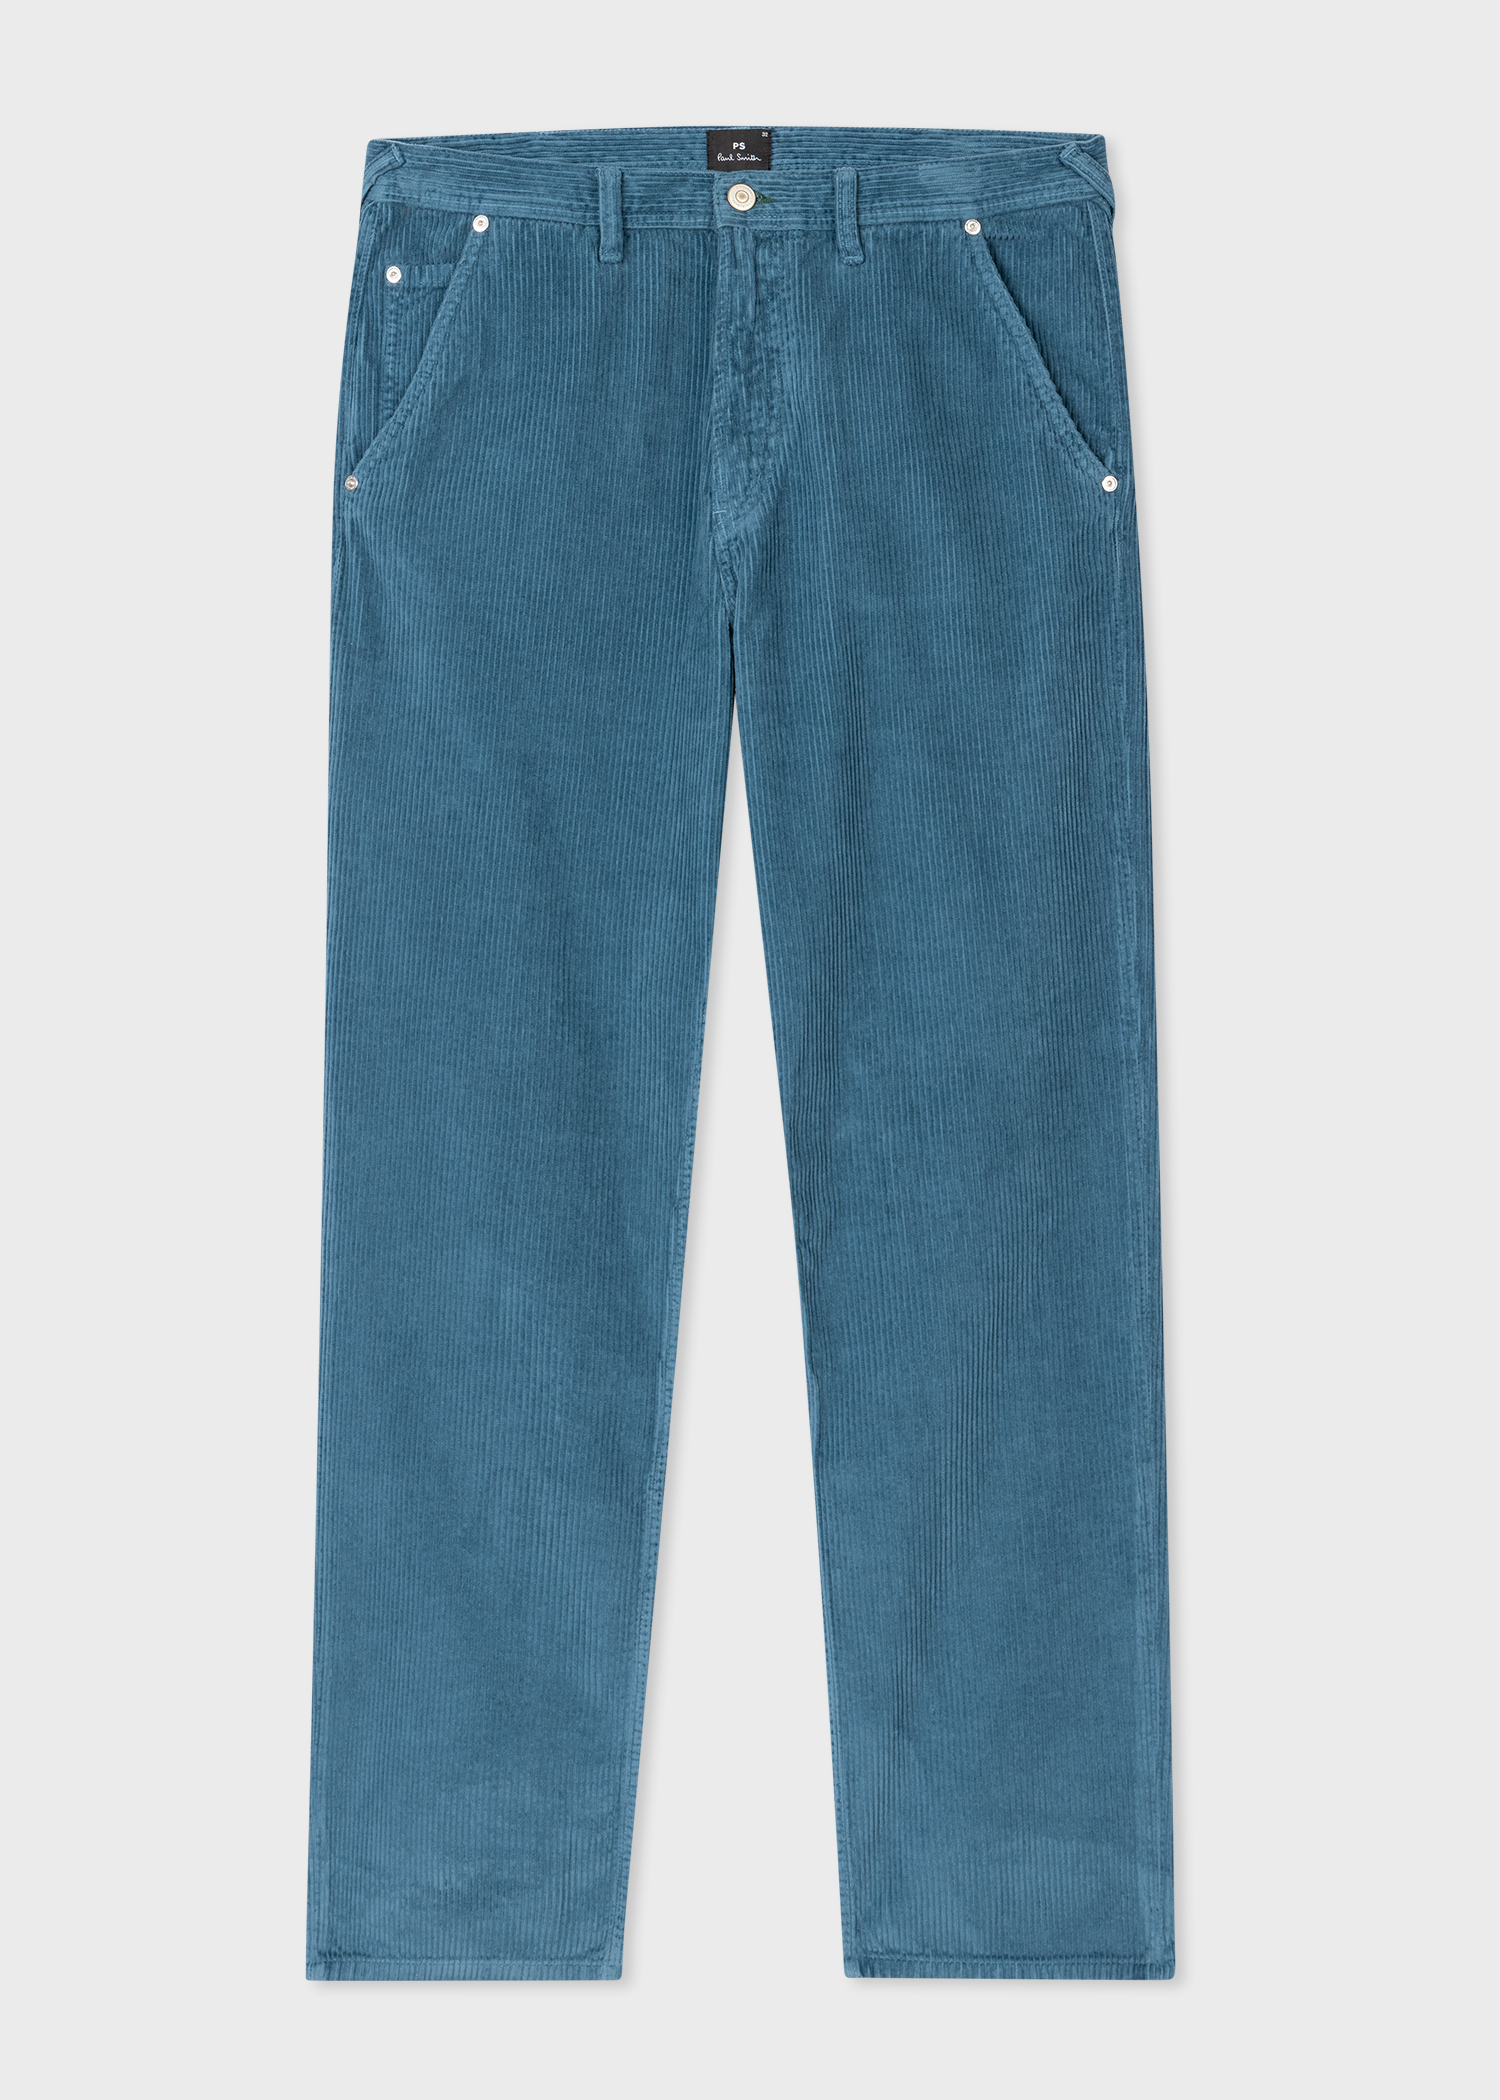 Men's Blue Corduroy Carpenter Trousers